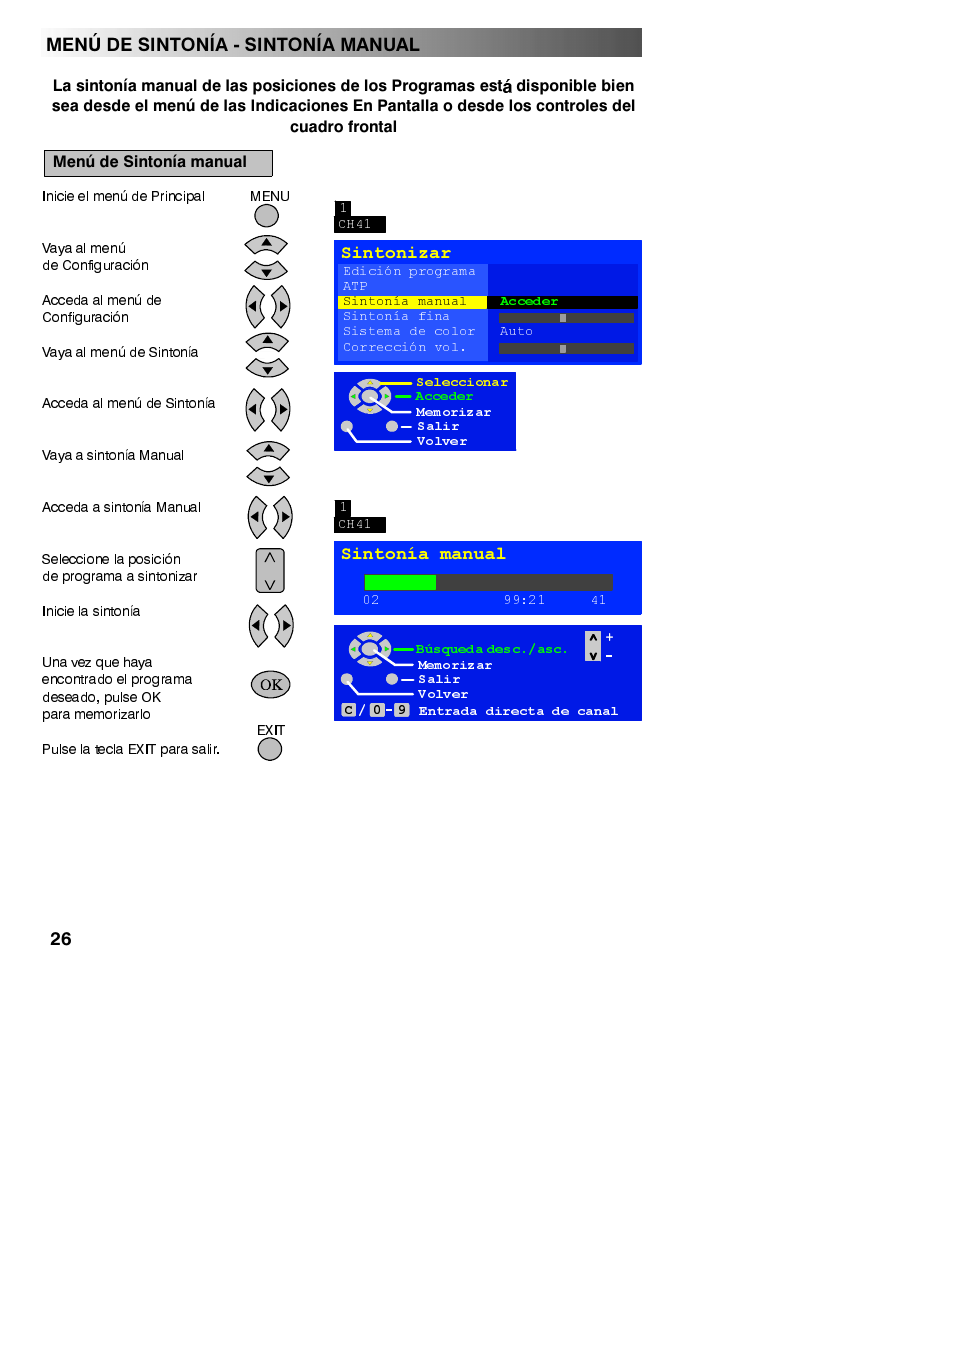 Cuadro frontal, Menú de sintonía manual, Sintonía manual | Menu de sintonia - sintonia manual | Panasonic TX23LX50F Manual del usuario | Página 26 / 44